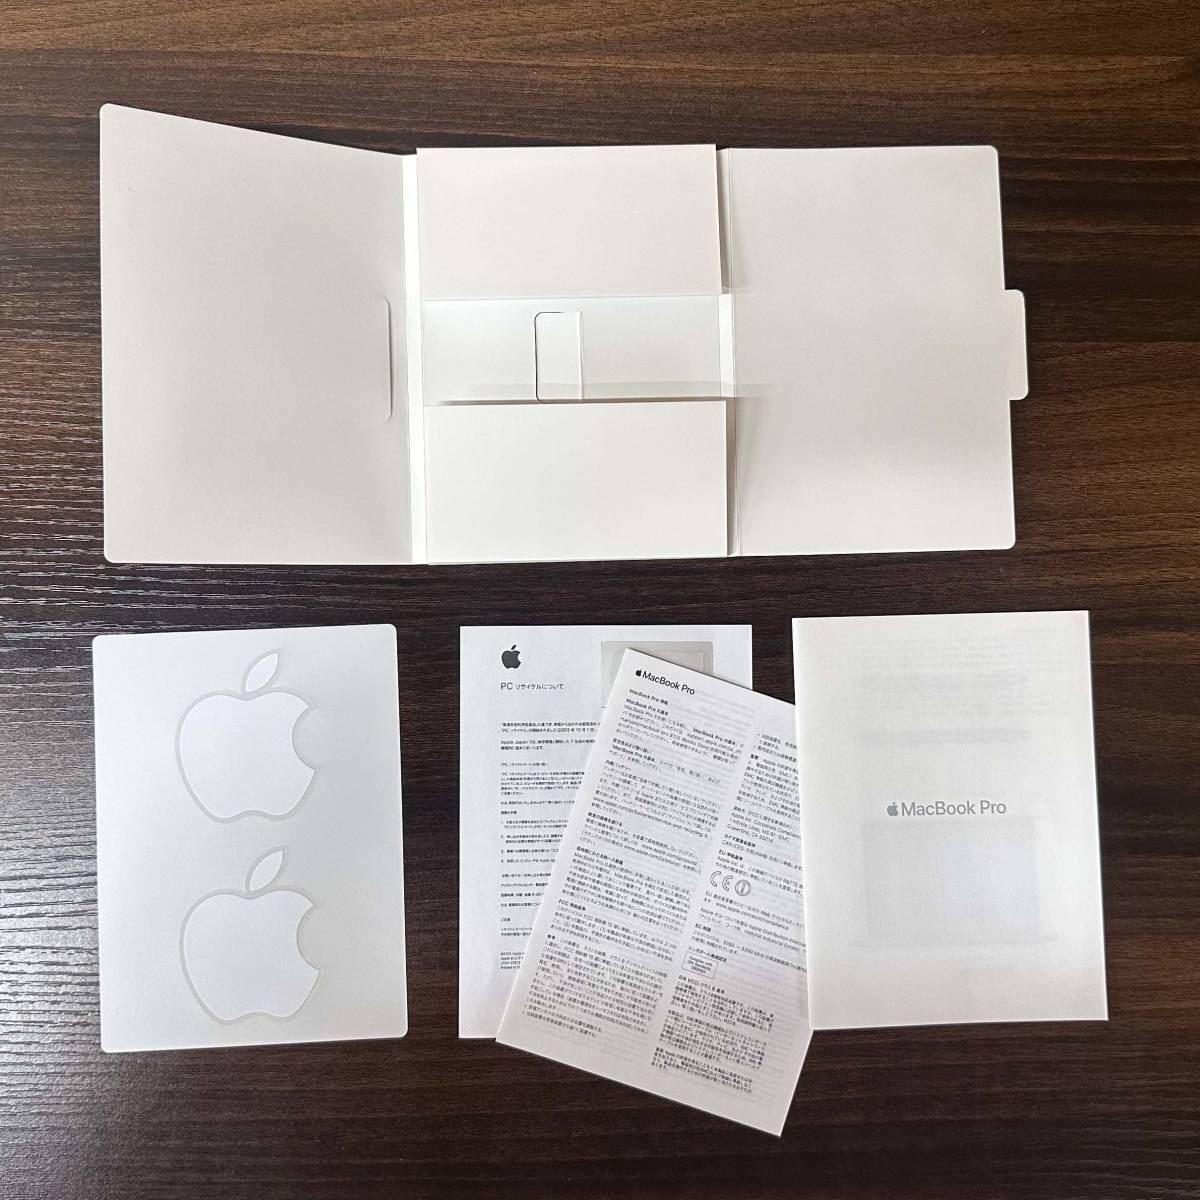 【送料無料】 Apple MacBook Pro 13 inch A1706 元箱のみ 中古品 空箱 専用箱 化粧箱 ステッカー_画像4